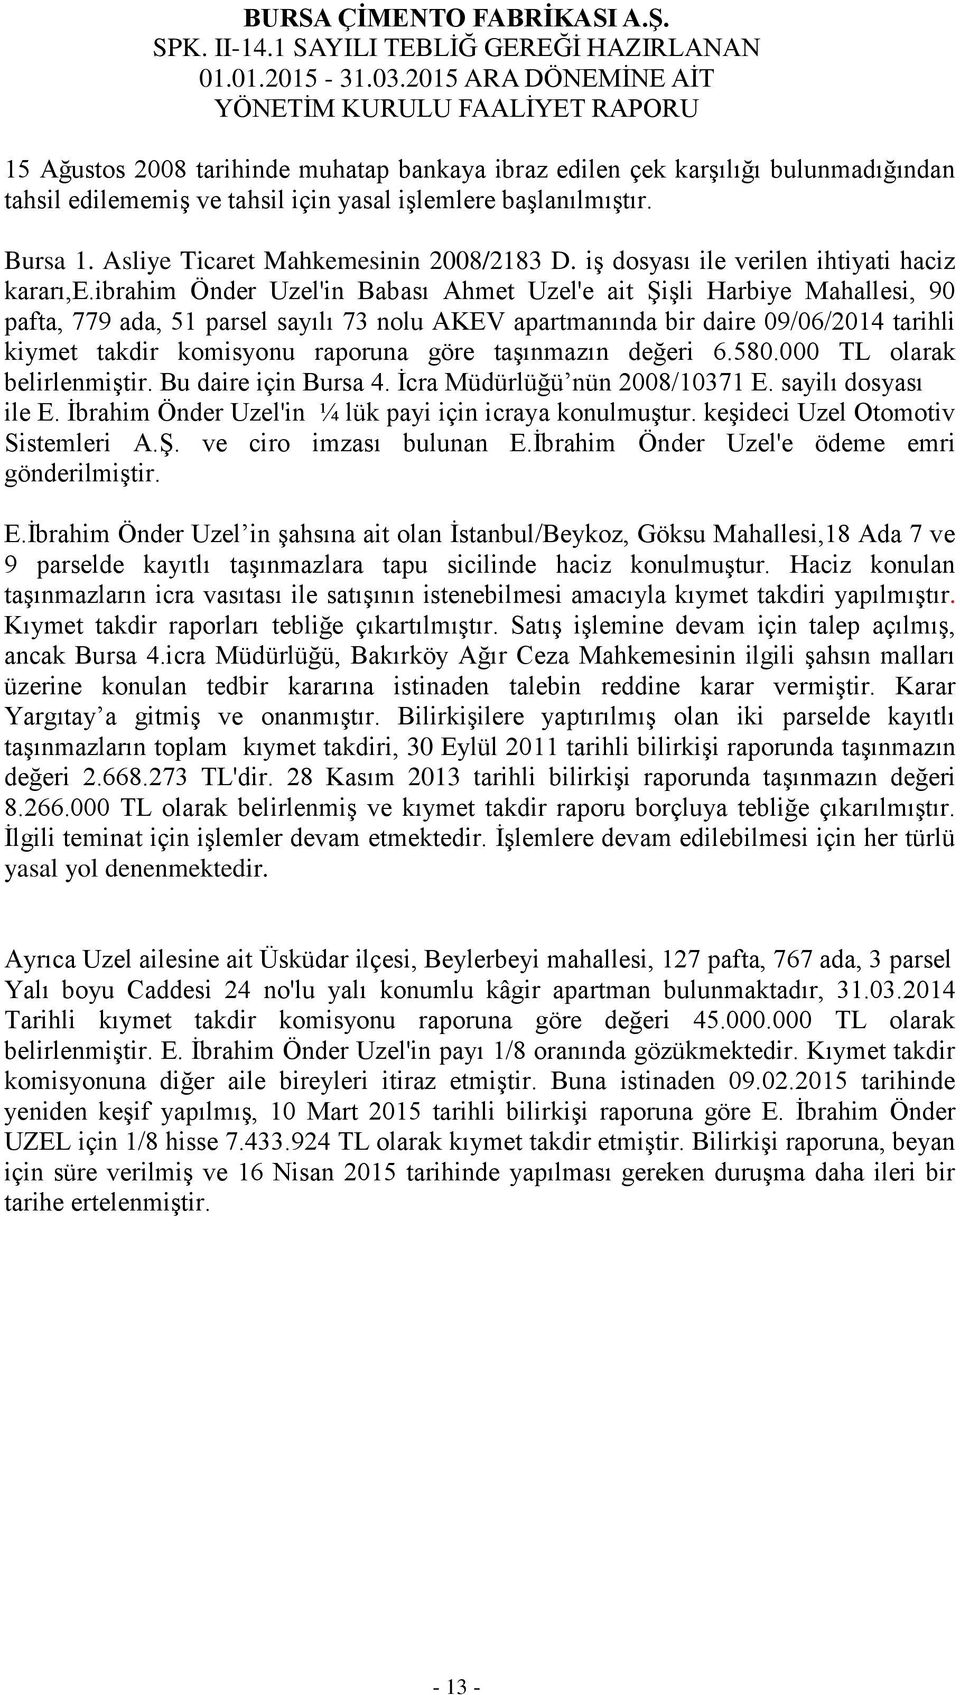 ibrahim Önder Uzel'in Babası Ahmet Uzel'e ait Şişli Harbiye Mahallesi, 90 pafta, 779 ada, 51 parsel sayılı 73 nolu AKEV apartmanında bir daire 09/06/2014 tarihli kiymet takdir komisyonu raporuna göre